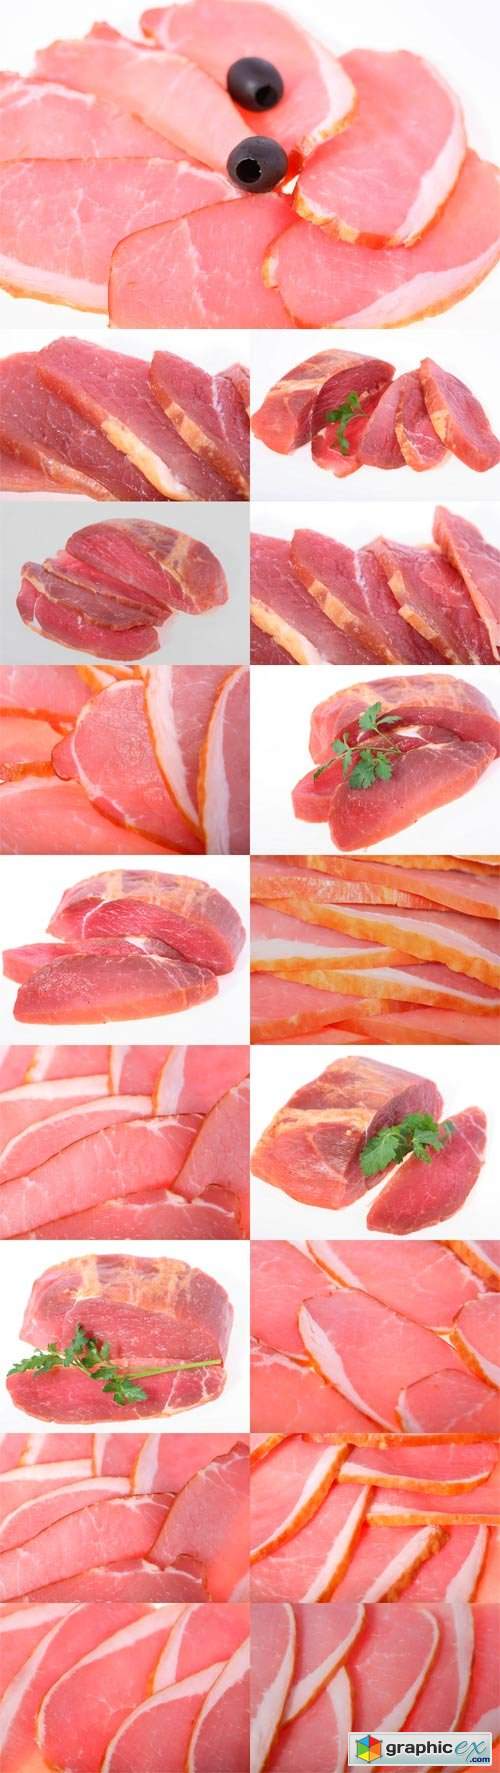  Cutting fresh raw meat 